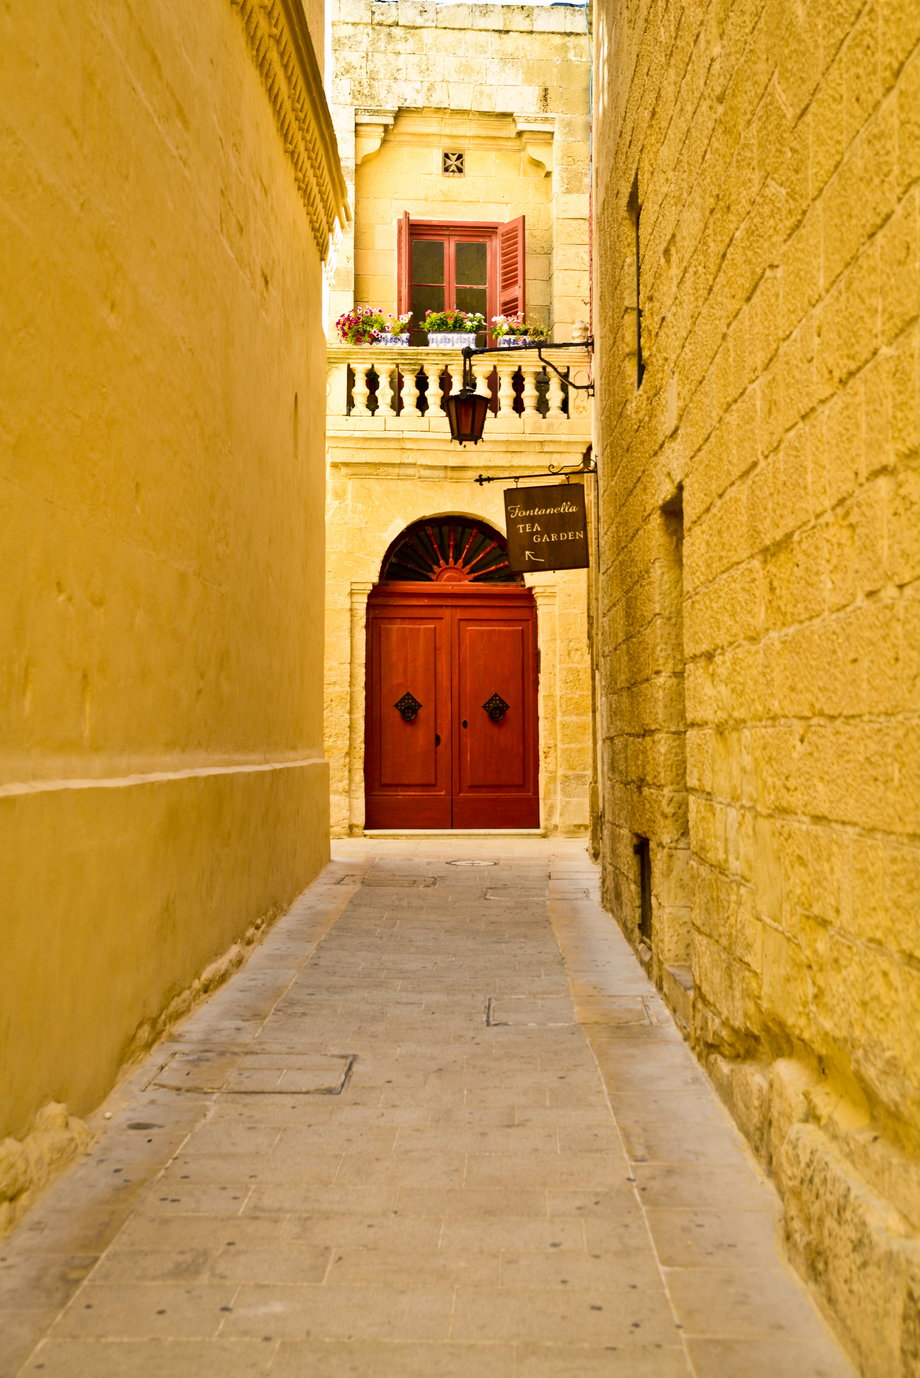 Mdina - dawna stolica Malty, położona w centralnej części wyspy